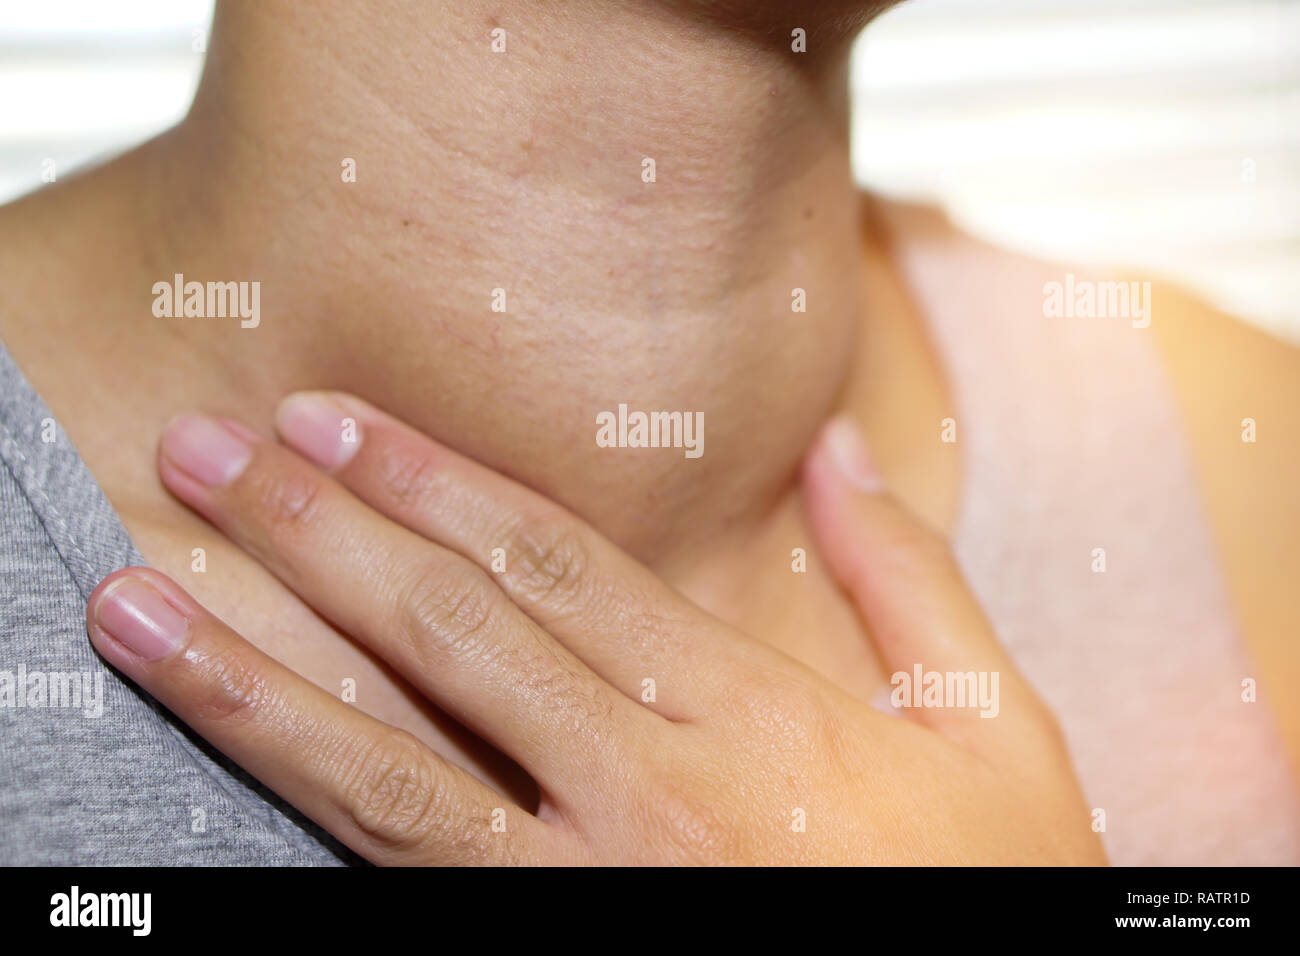 Asiatische Dame Frau Patienten abnorme Vergrößerung der Schilddrüse Hyperthyreose (Überfunktion der Schilddrüse) an der Kehle: Gesunde starke Medizinische anhand von quantitativen Simulatio Stockfoto